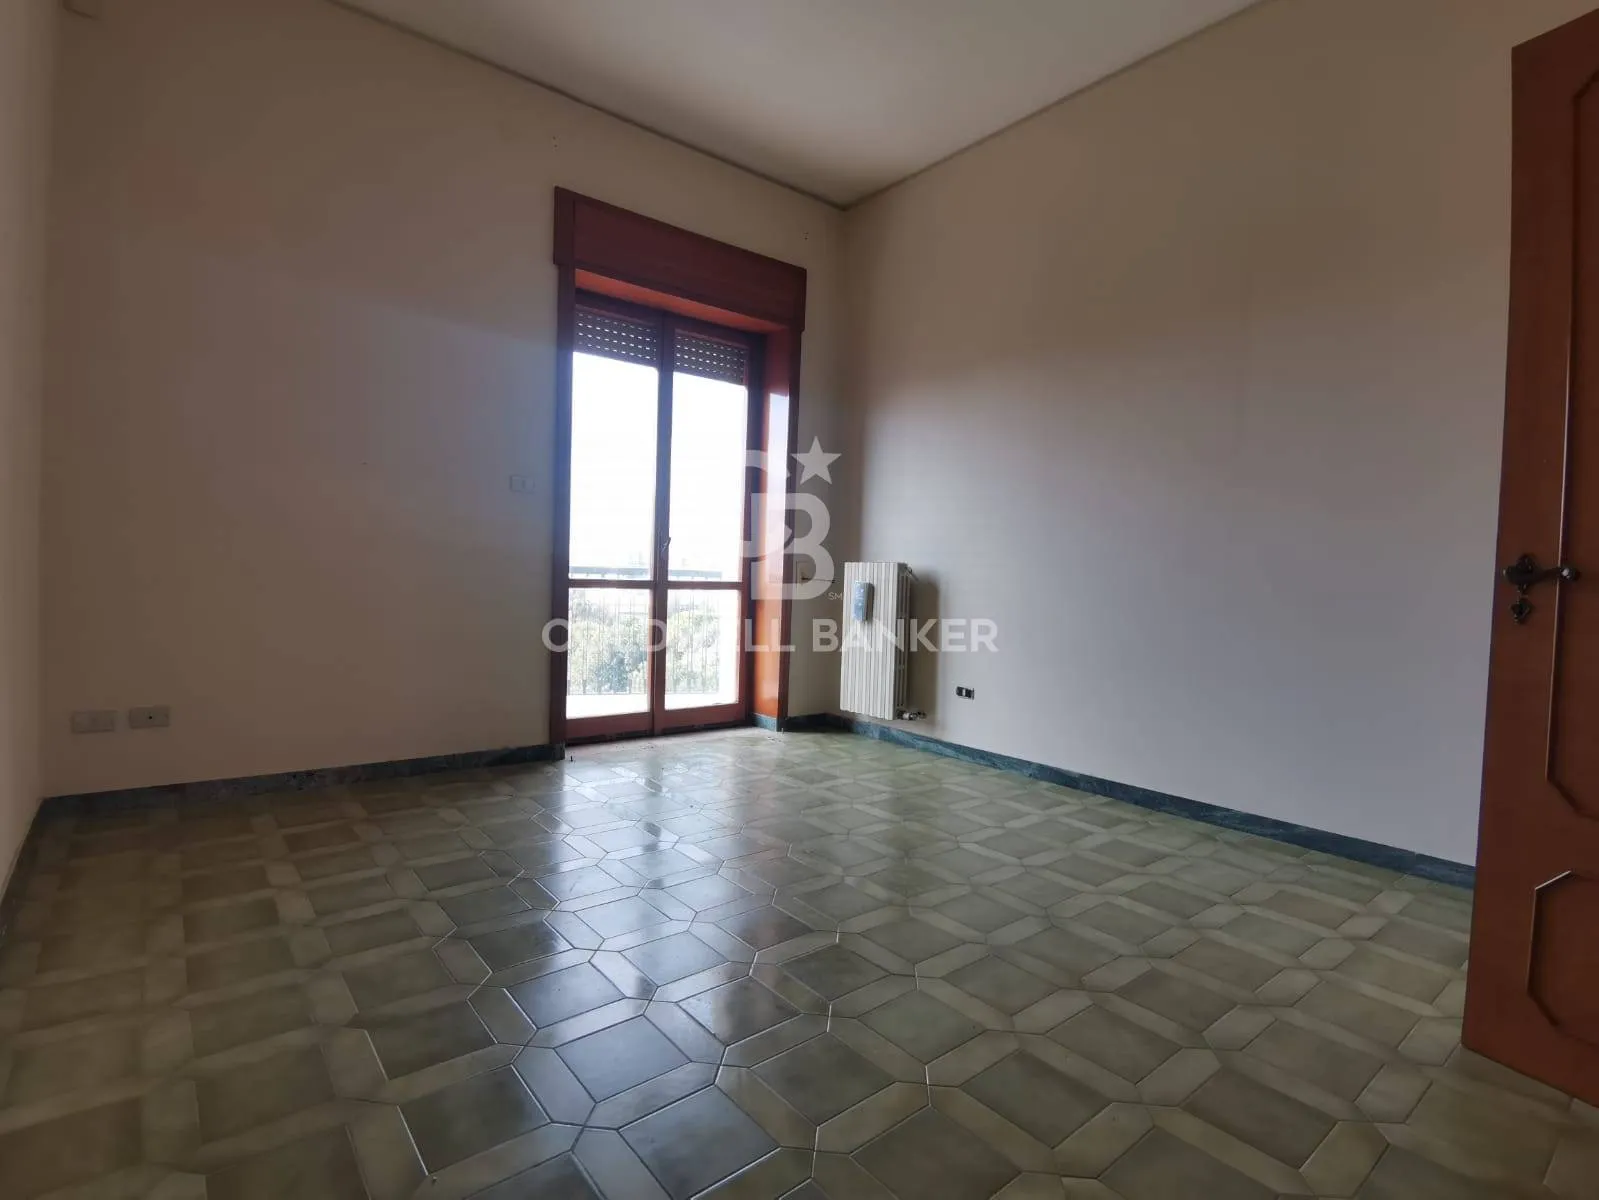 Immagine per Appartamento in affitto a Galatina Via Principe di Piemonte